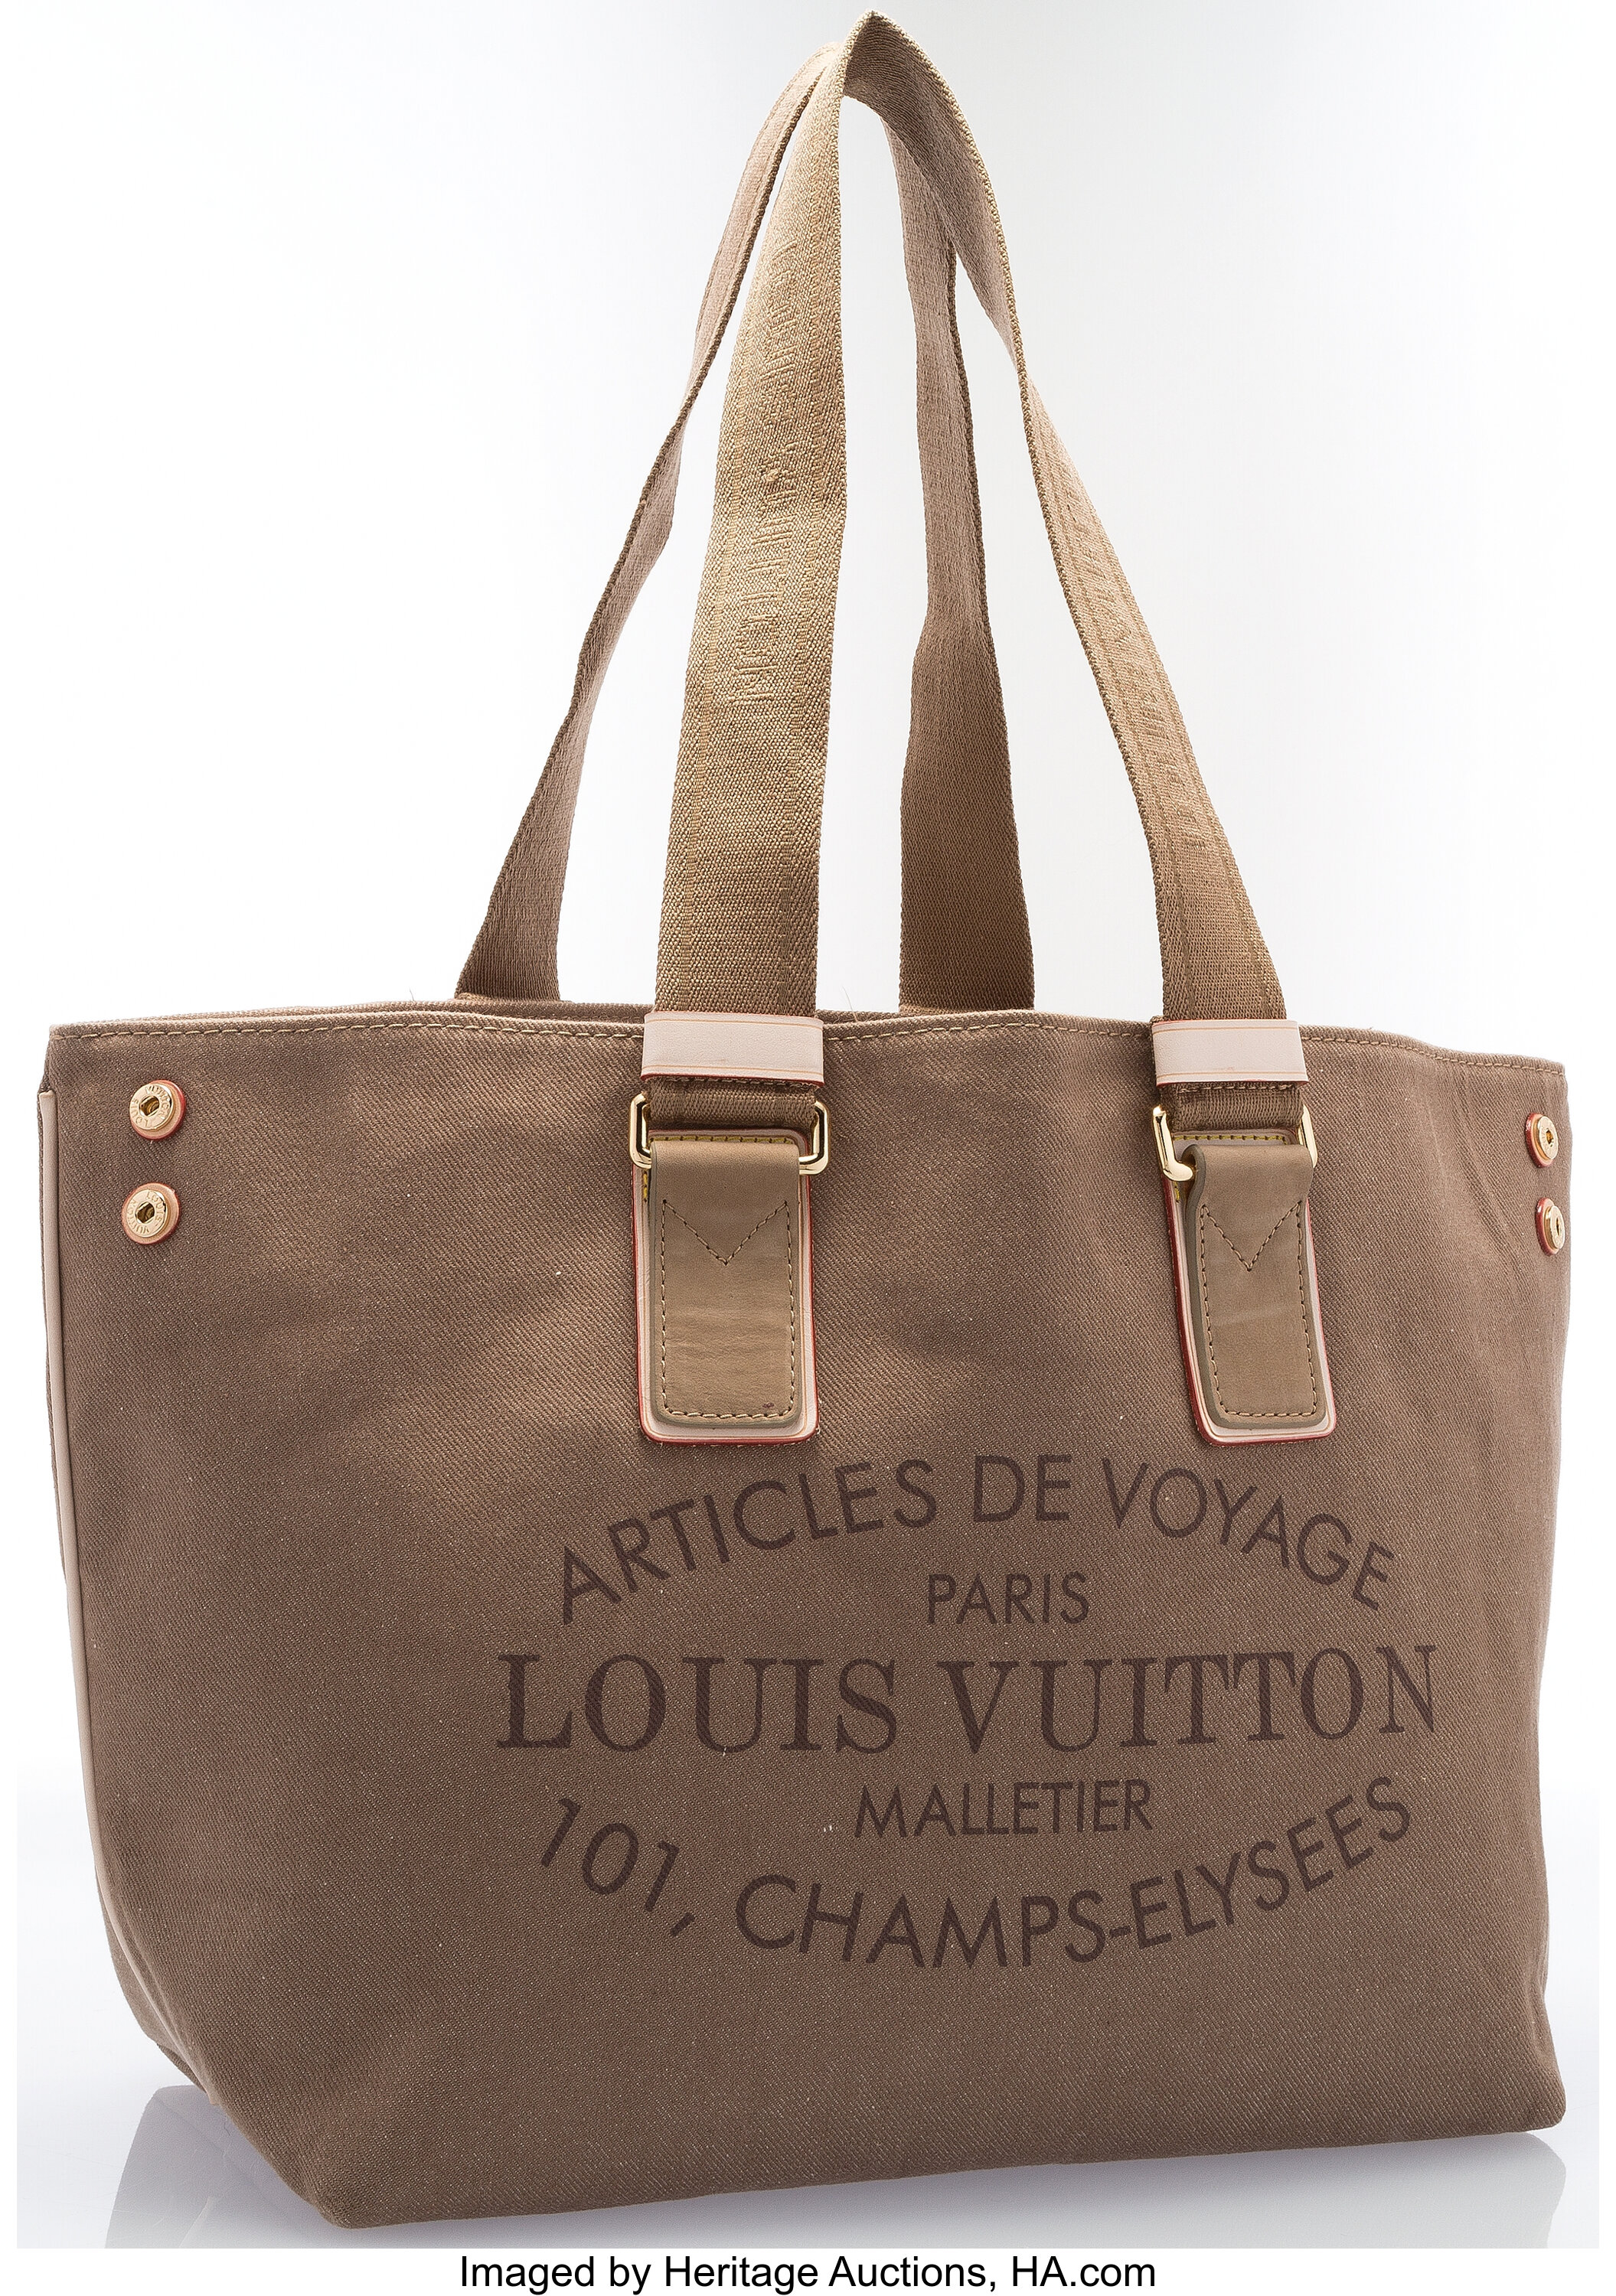 Louis Vuitton Olive Green Canvas Articles de Voyage Tote Bag. | Lot ...